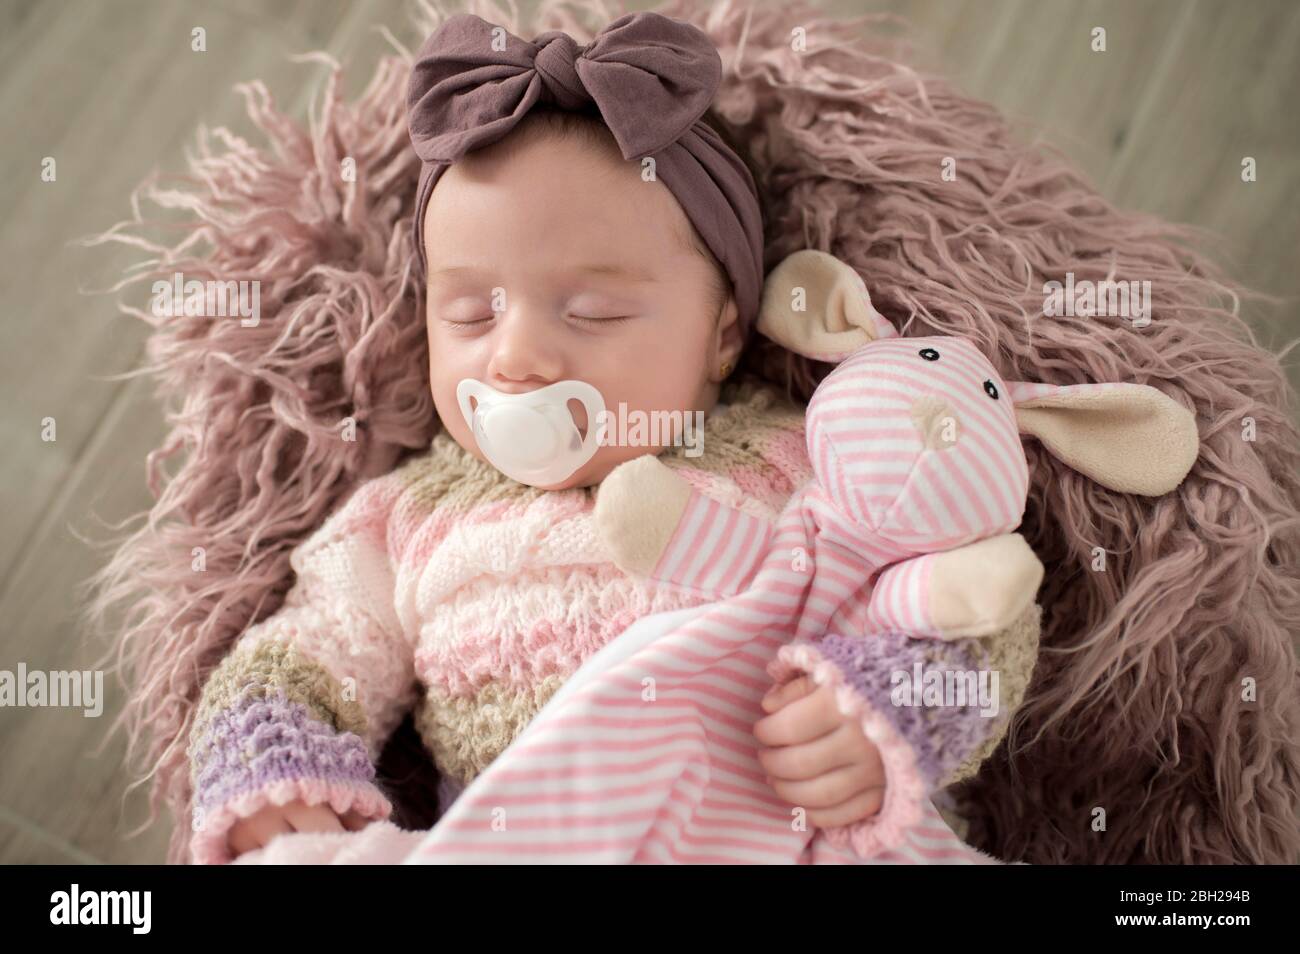 Portrait de bébé fille endormi avec serre-cheveux, jouet doux et sucette Banque D'Images